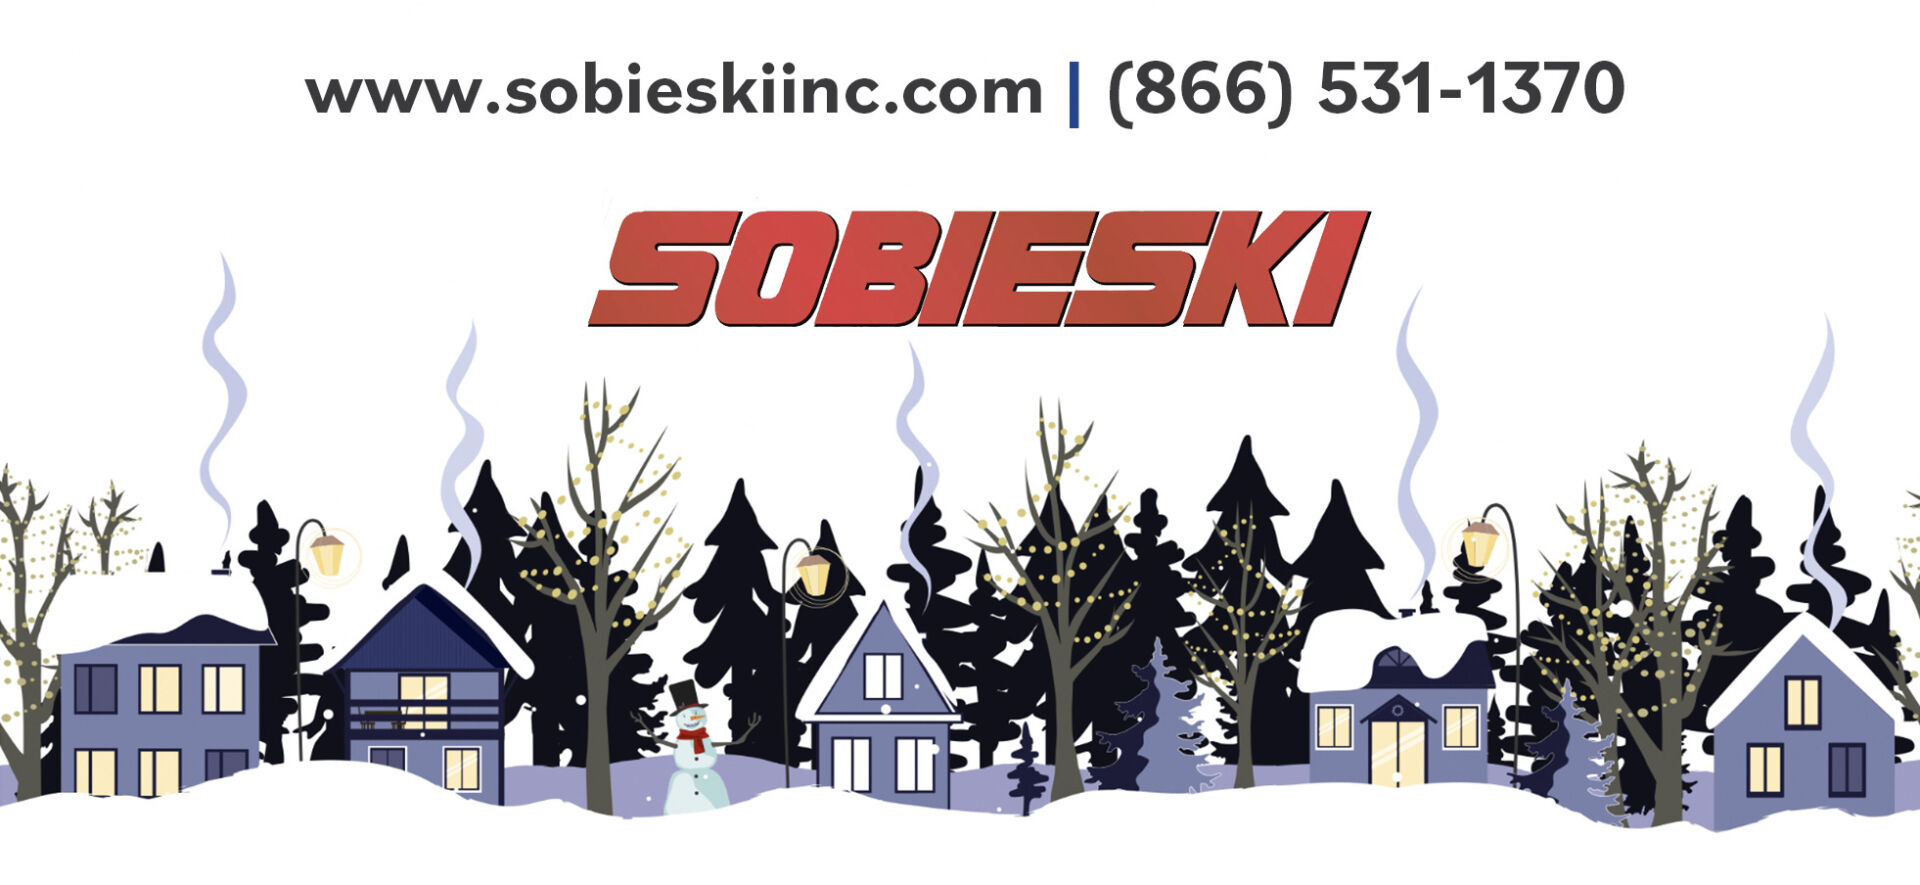 Sobieski Winter